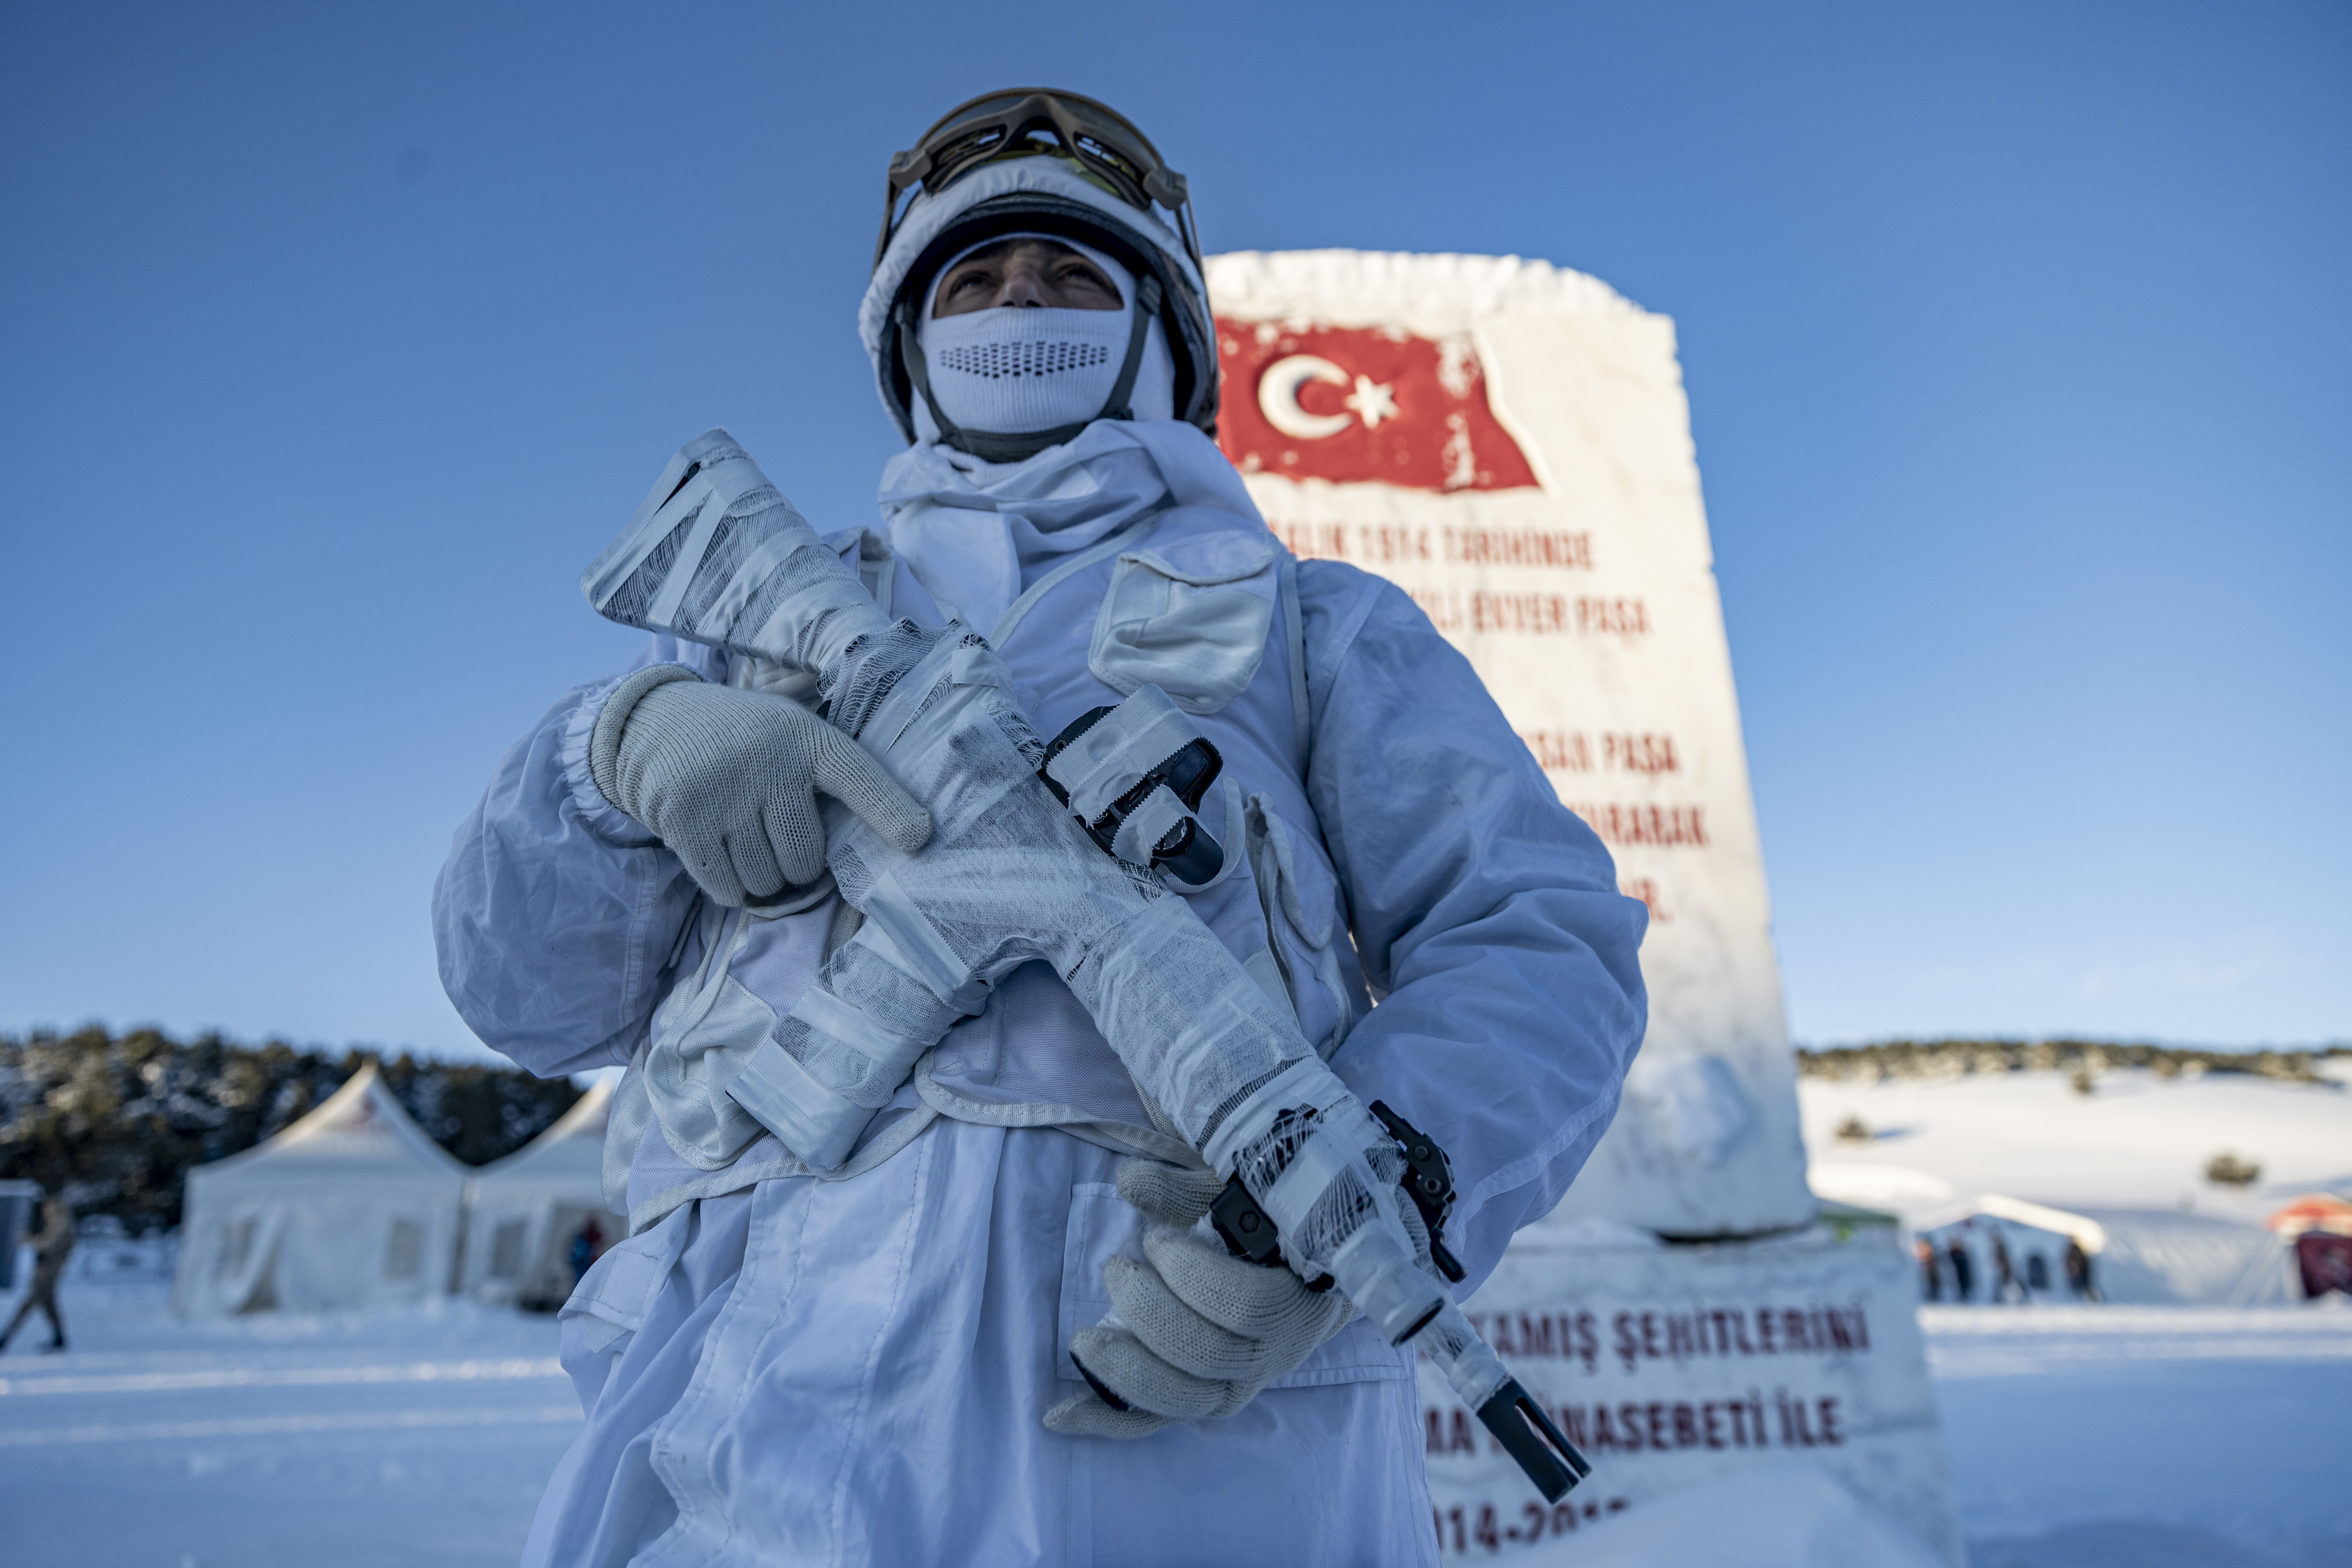 Türkiye "Bu toprakta izin var" temasıyla Sarıkamış'ta yürüyüşe başladı